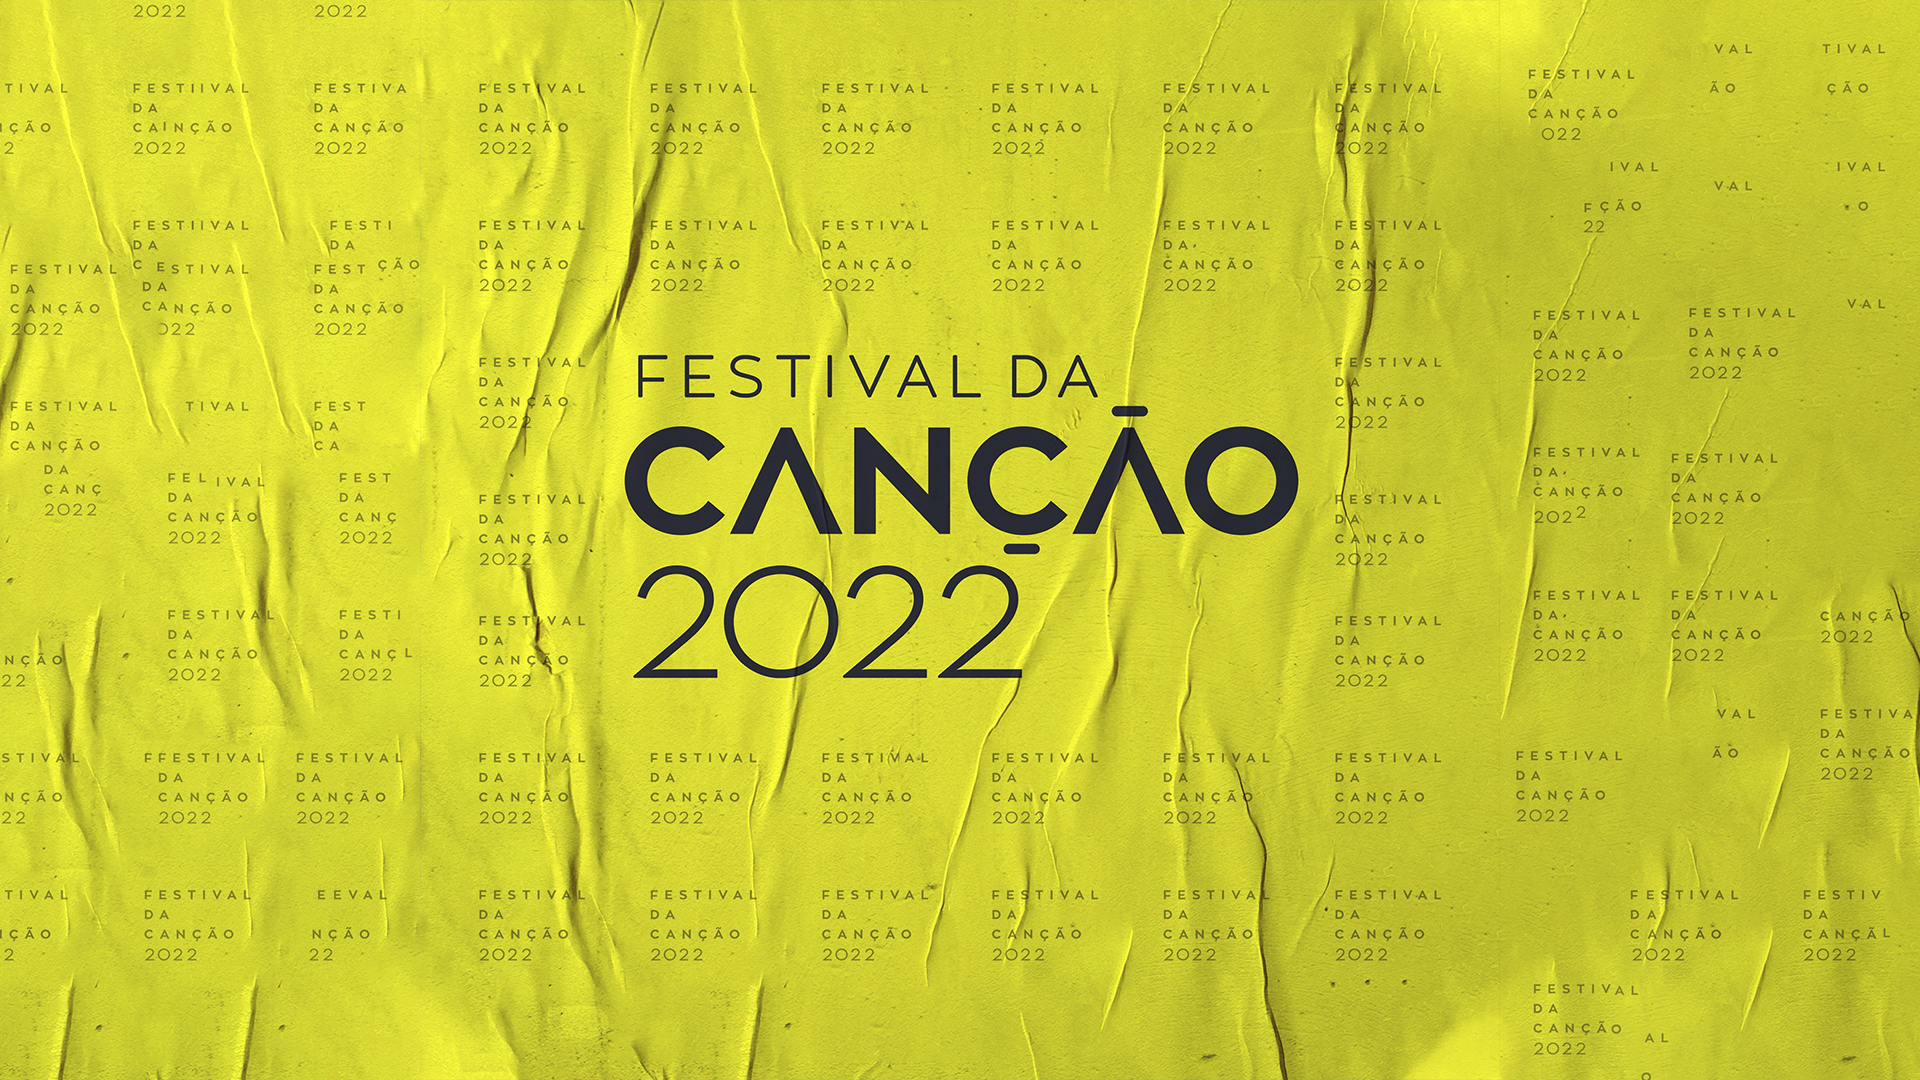 Esta noche se celebra la final del Festival da Canção 2022